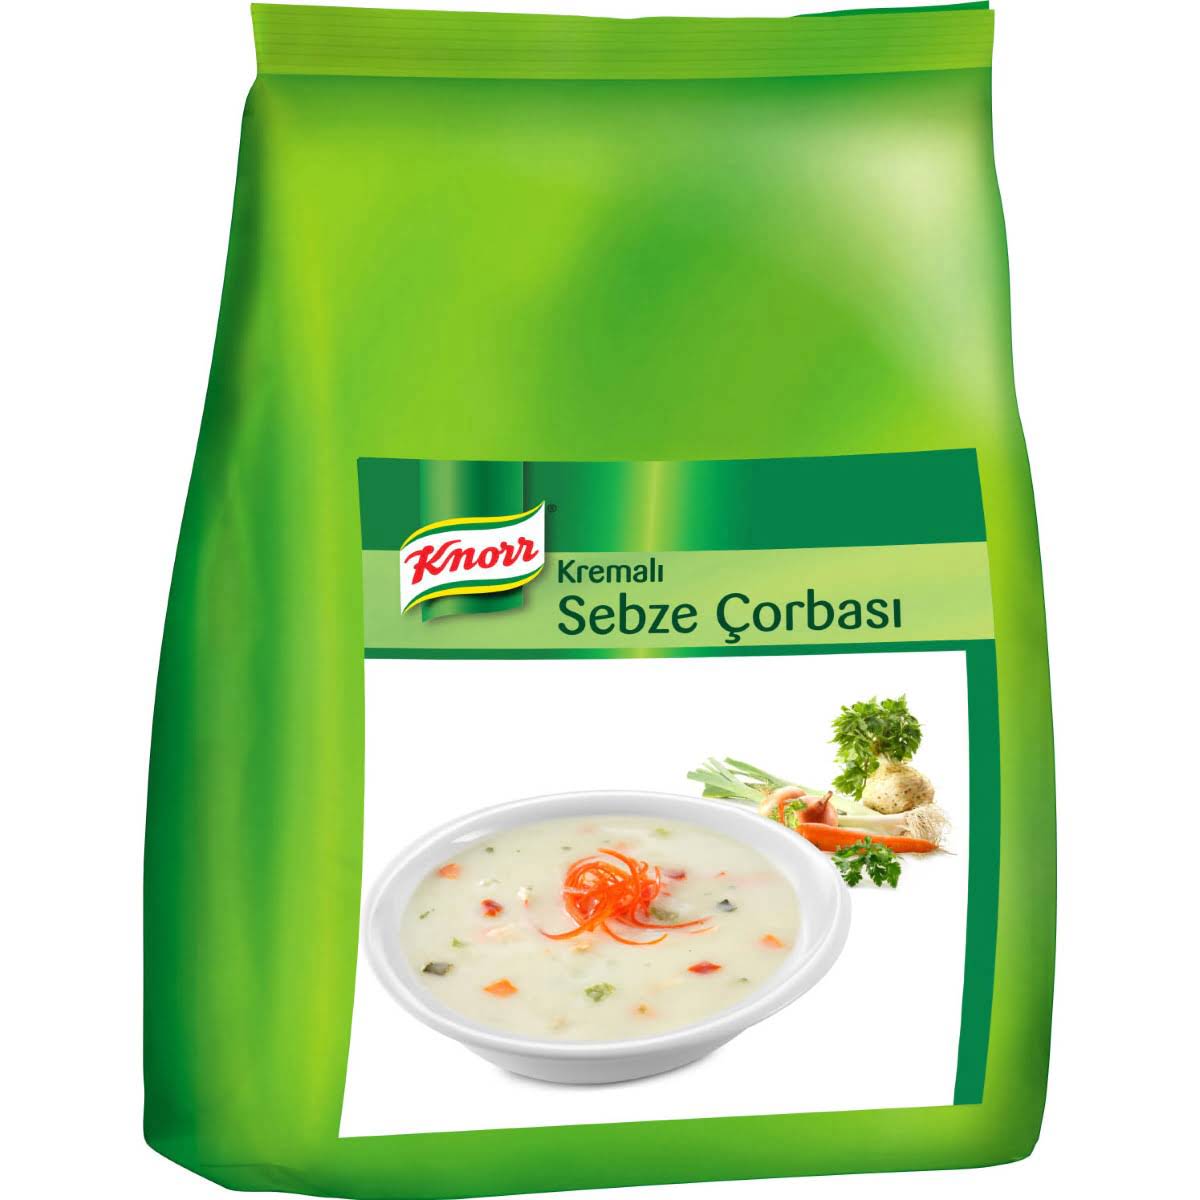 Kremalı sebze çorbası 3 kiloluk paketler halinde koli içi 3 adet Knorr marka